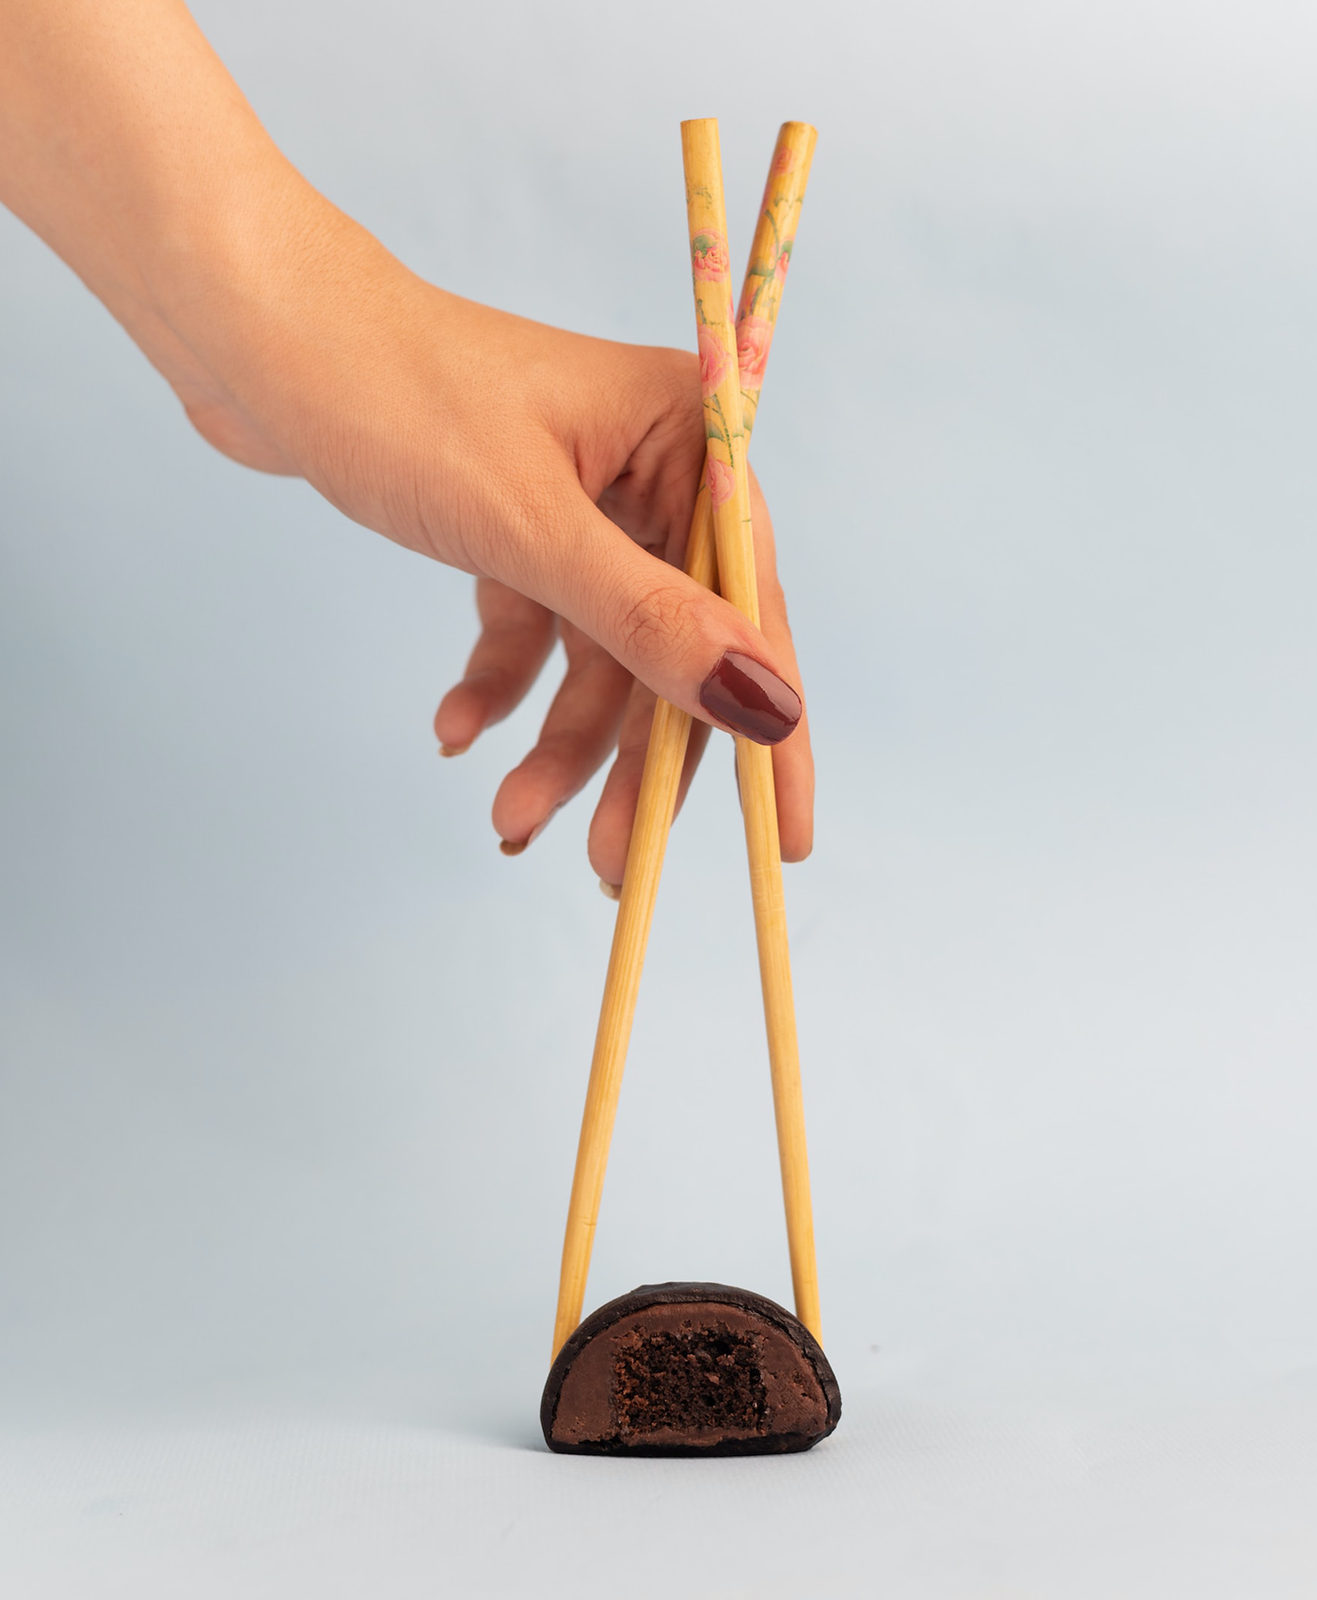 Une personne prend un mochi avec des baguettes chinoises